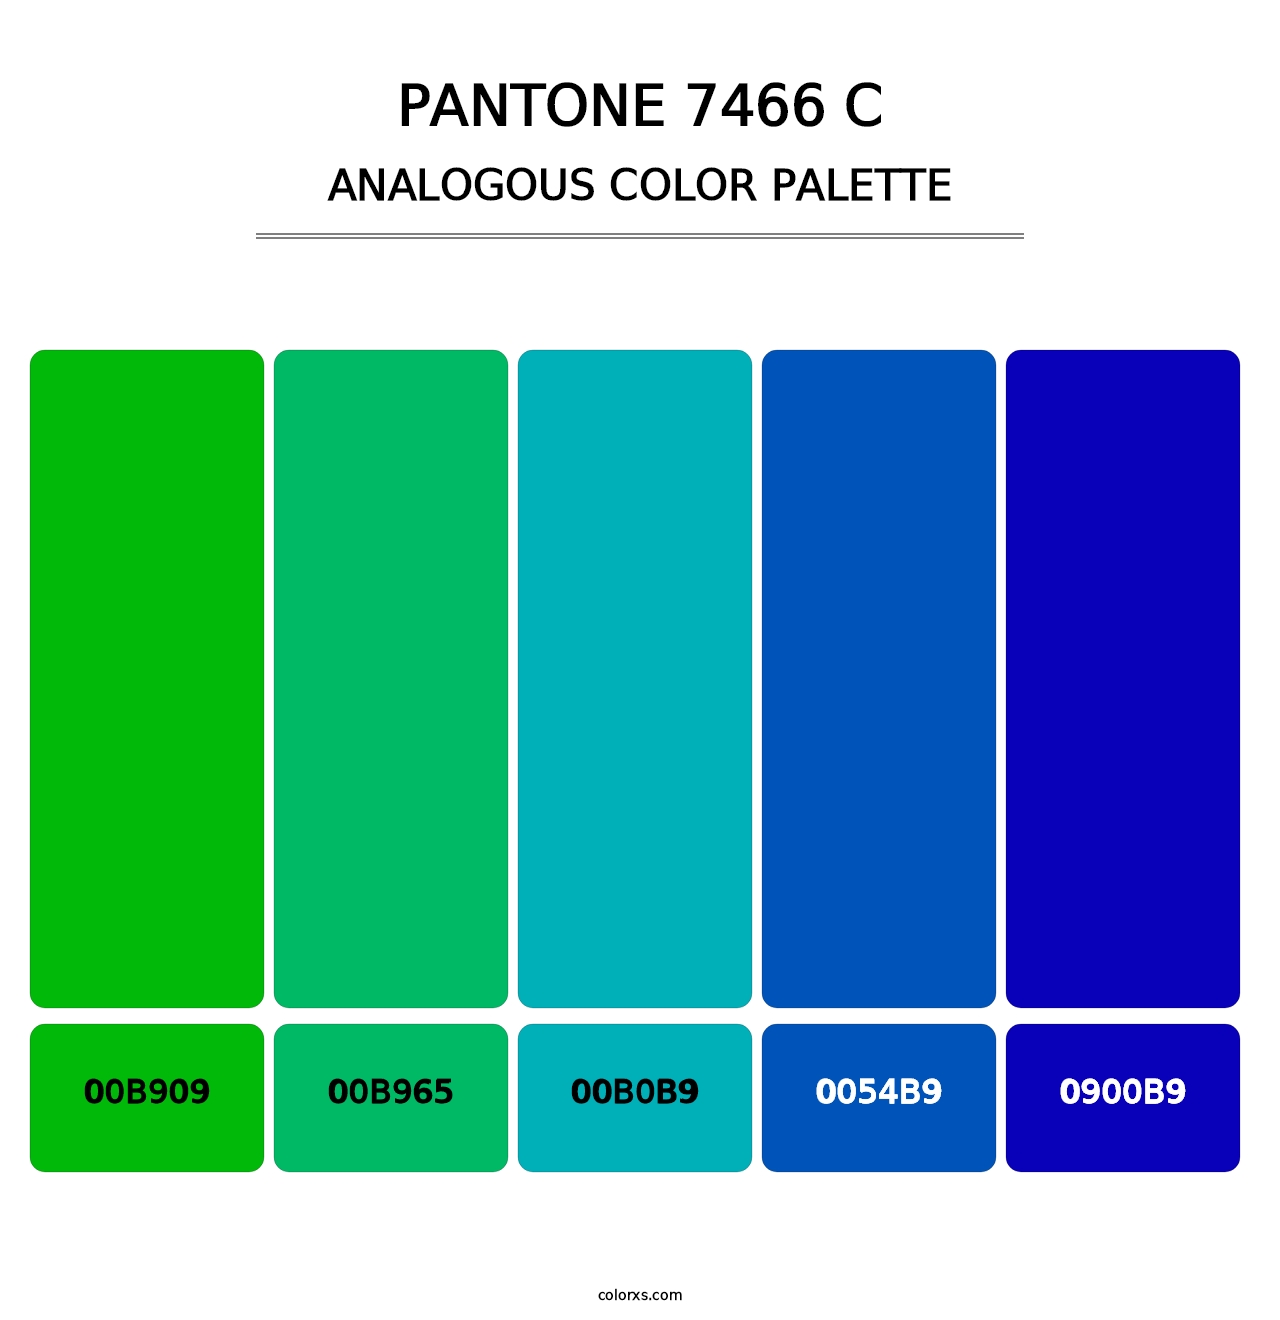 PANTONE 7466 C - Analogous Color Palette